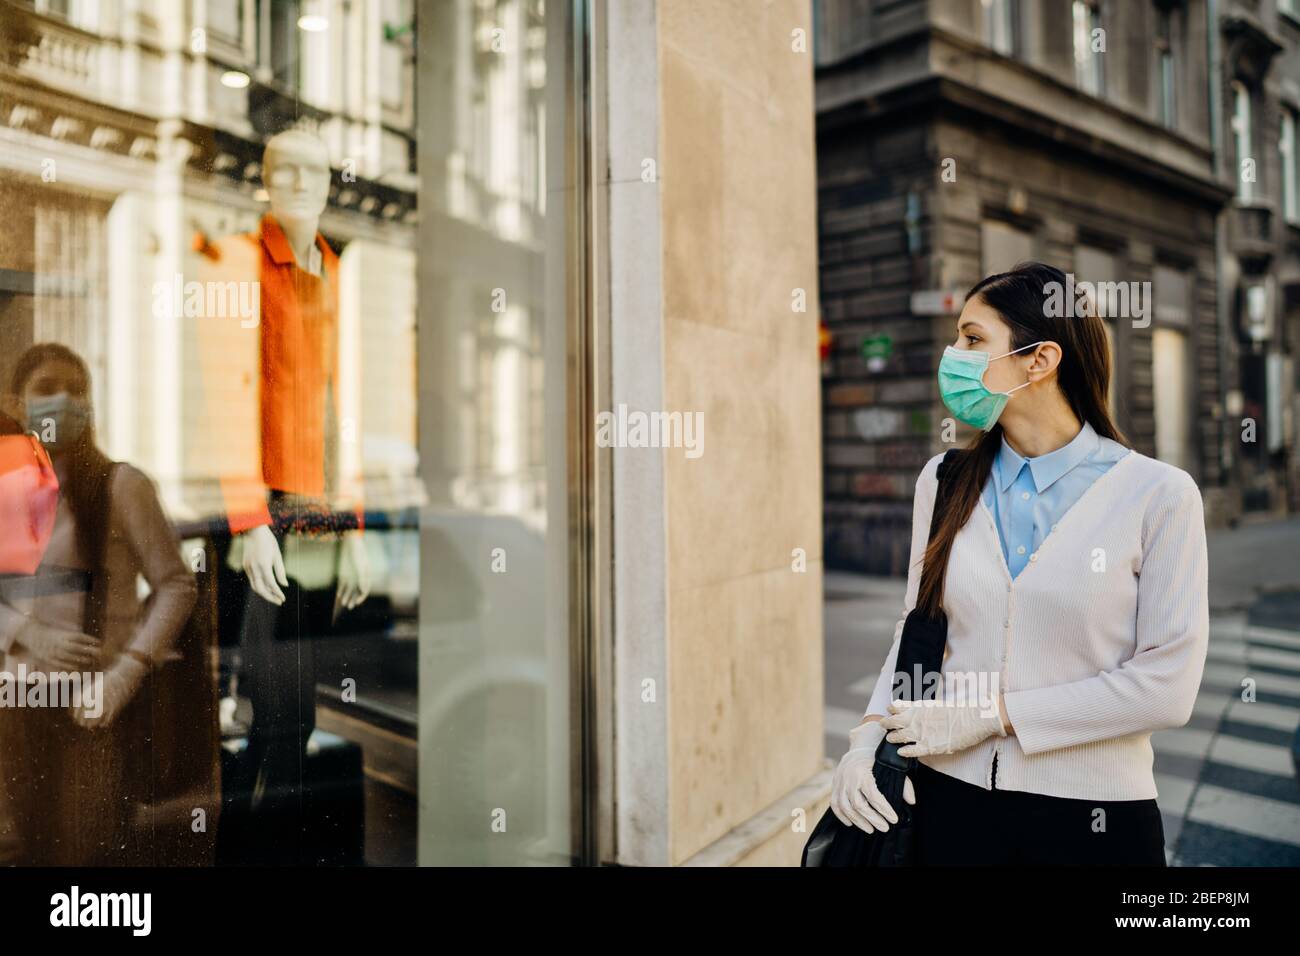 Donna con maschera che guarda un chiuso di moda vestiti storefront.Abbigliamento shopping durante lo spegnimento focolaio di coronavirus.COVID-19 abbigliamento di quarantena Foto Stock